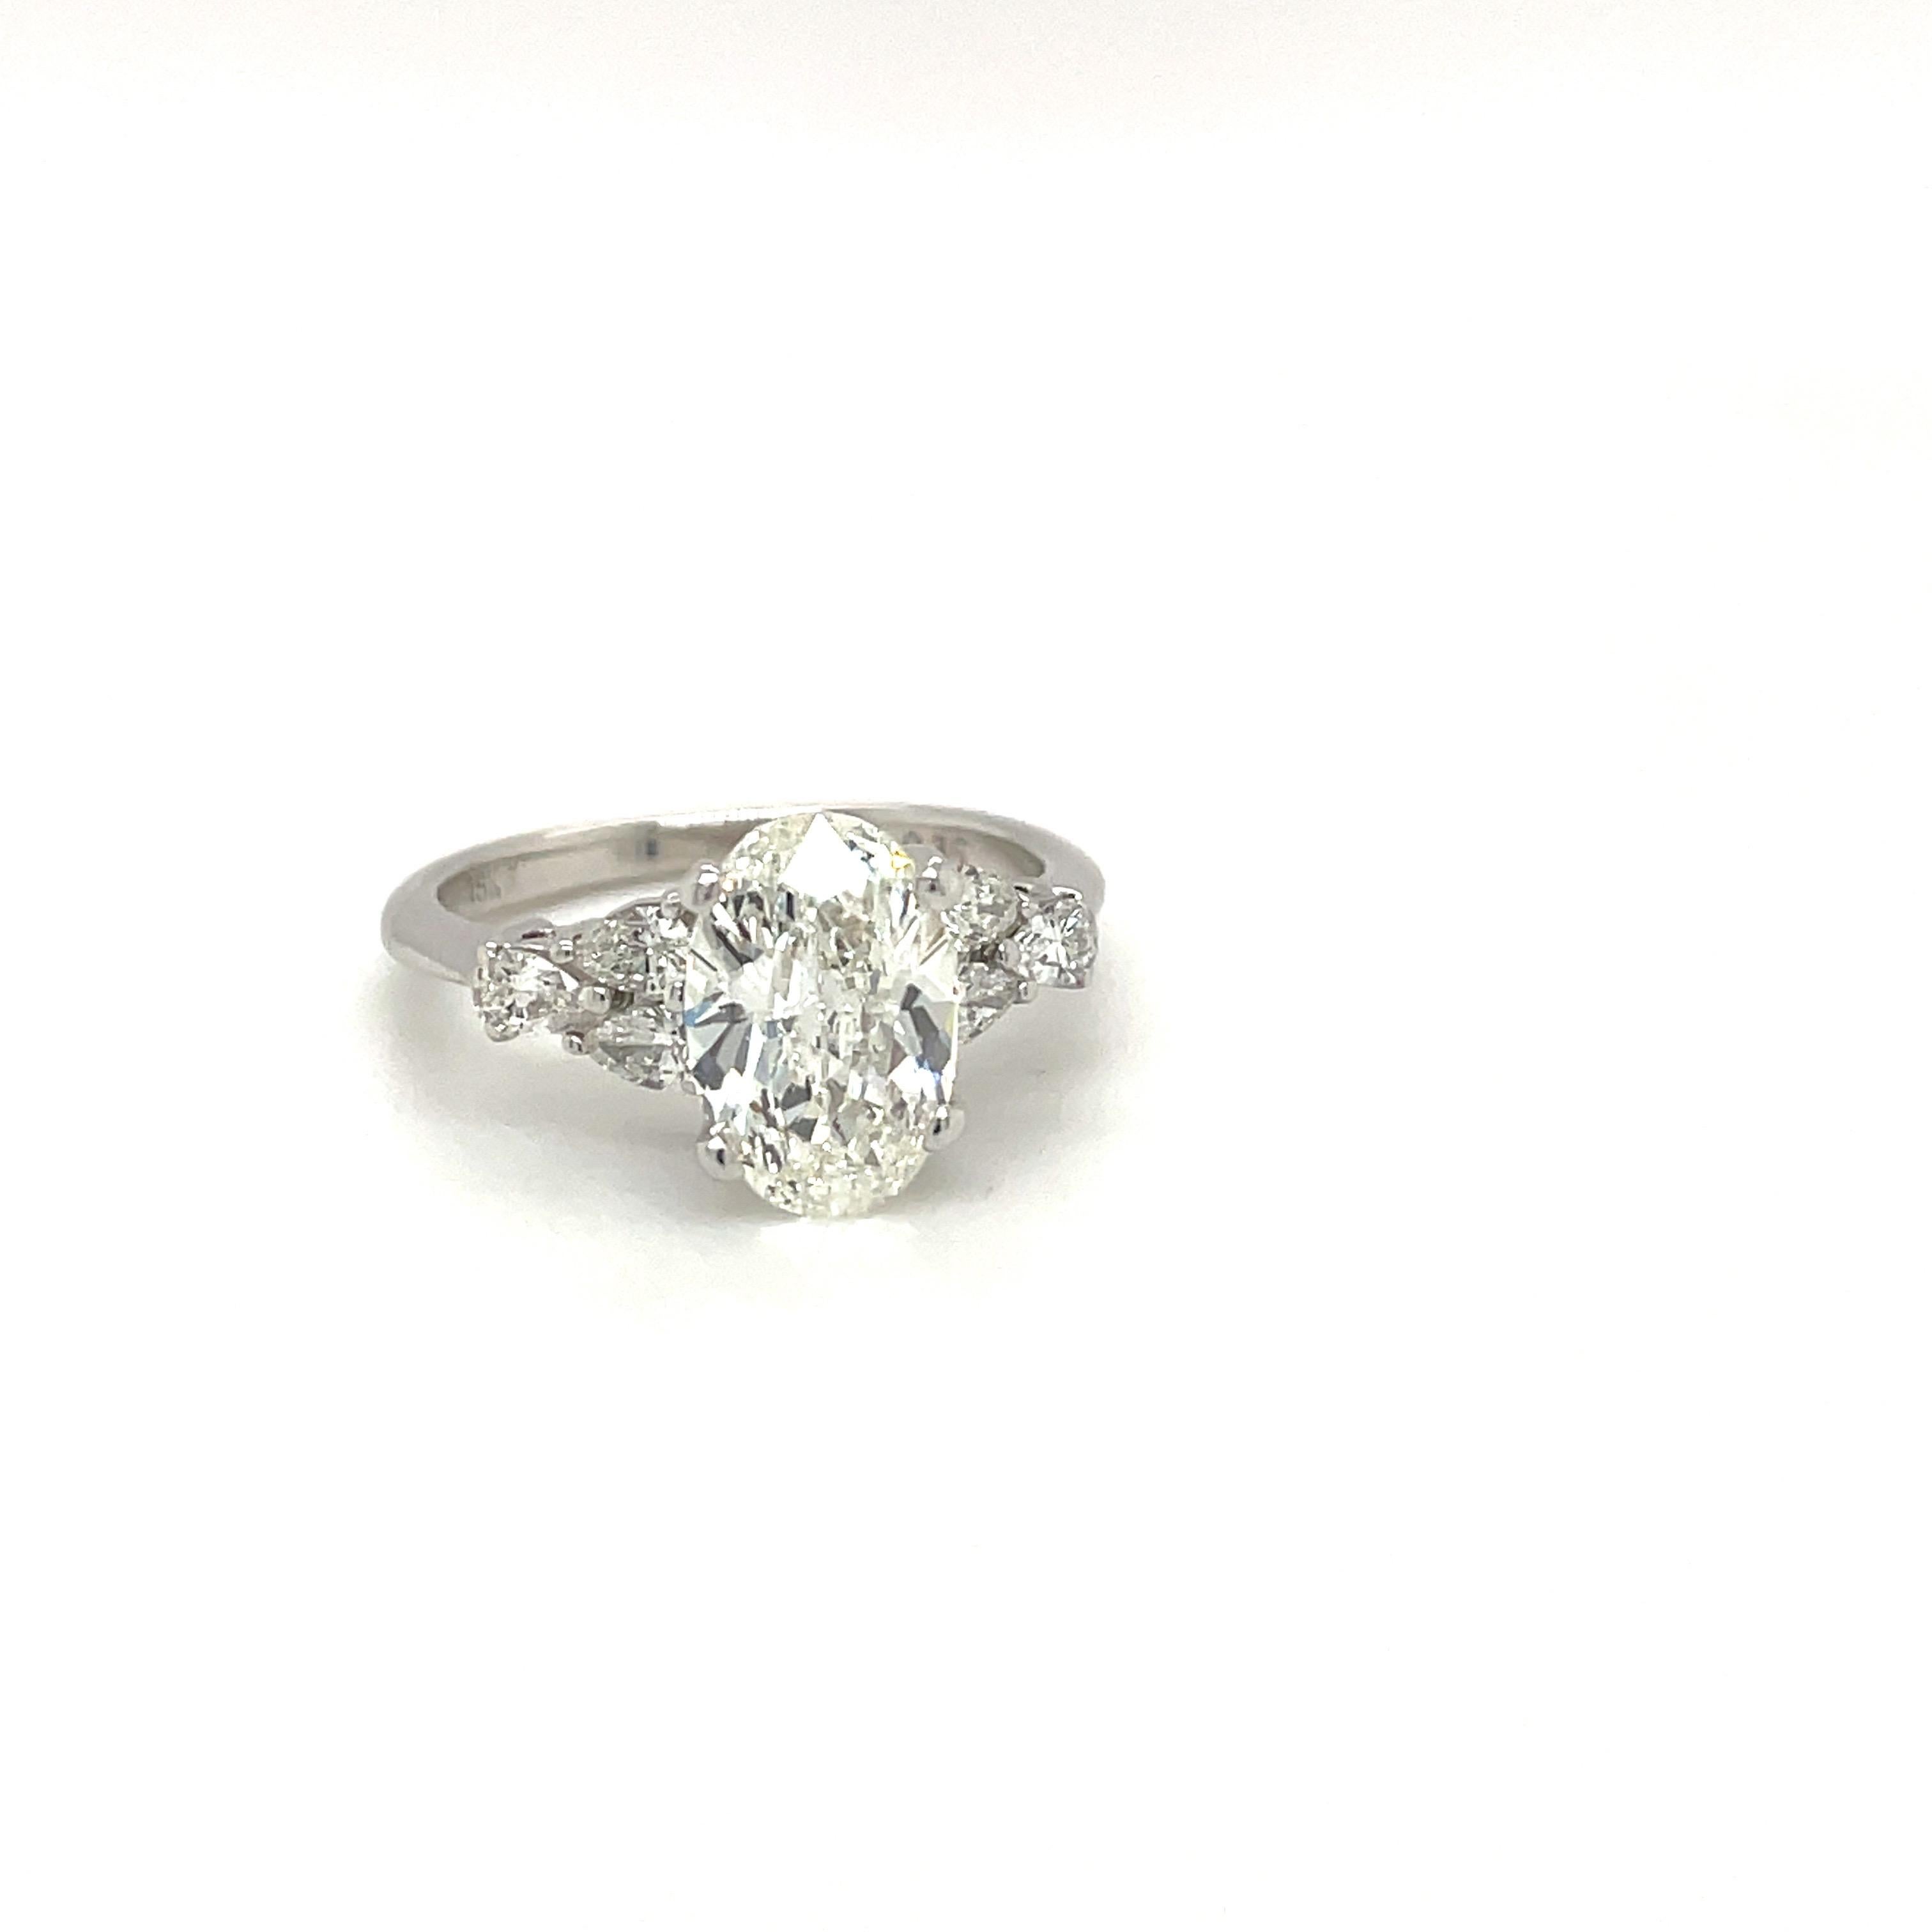 Magnifique bague à pierre centrale en diamant ovale. Le diamant ovale certifié par la GIA pèse 1,71 carats, de couleur H et de pureté VS1. La pierre centrale est montée dans une monture en platine avec 6 diamants en forme de poire de 0,35 carats ,3